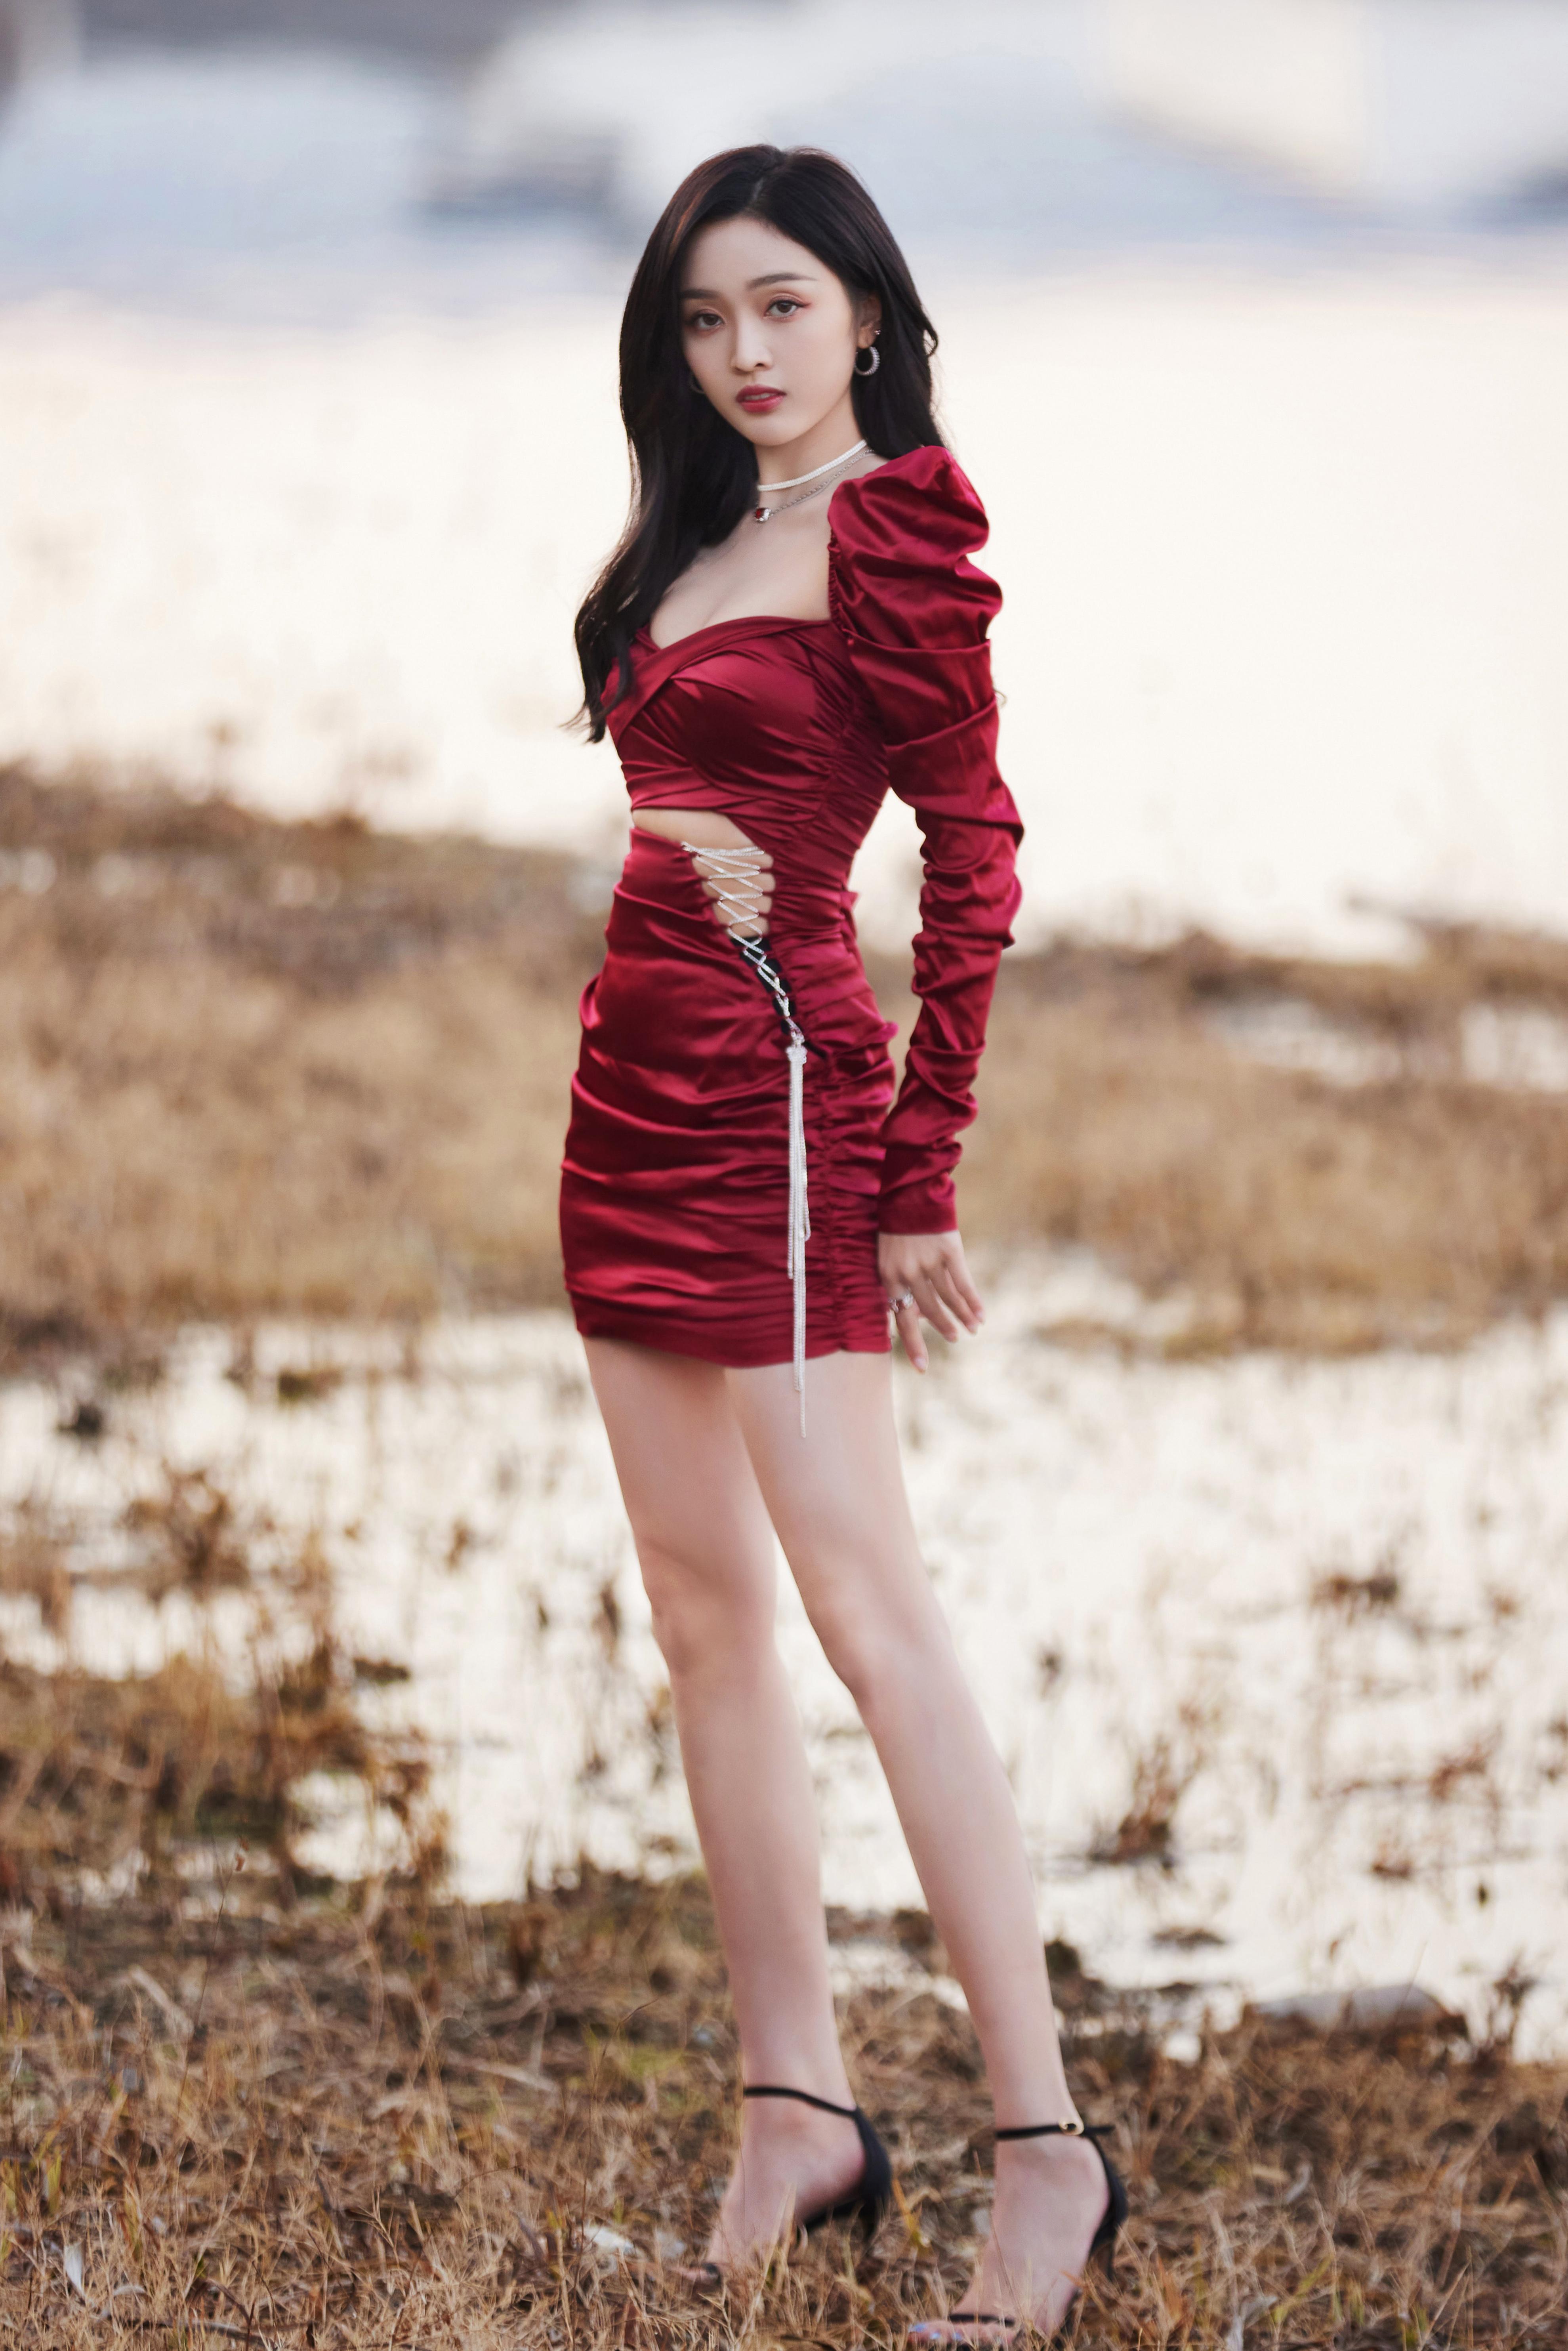 吴宣仪穿红绸缎礼裙秀身材 光影洒落纤腰长腿小露性感,